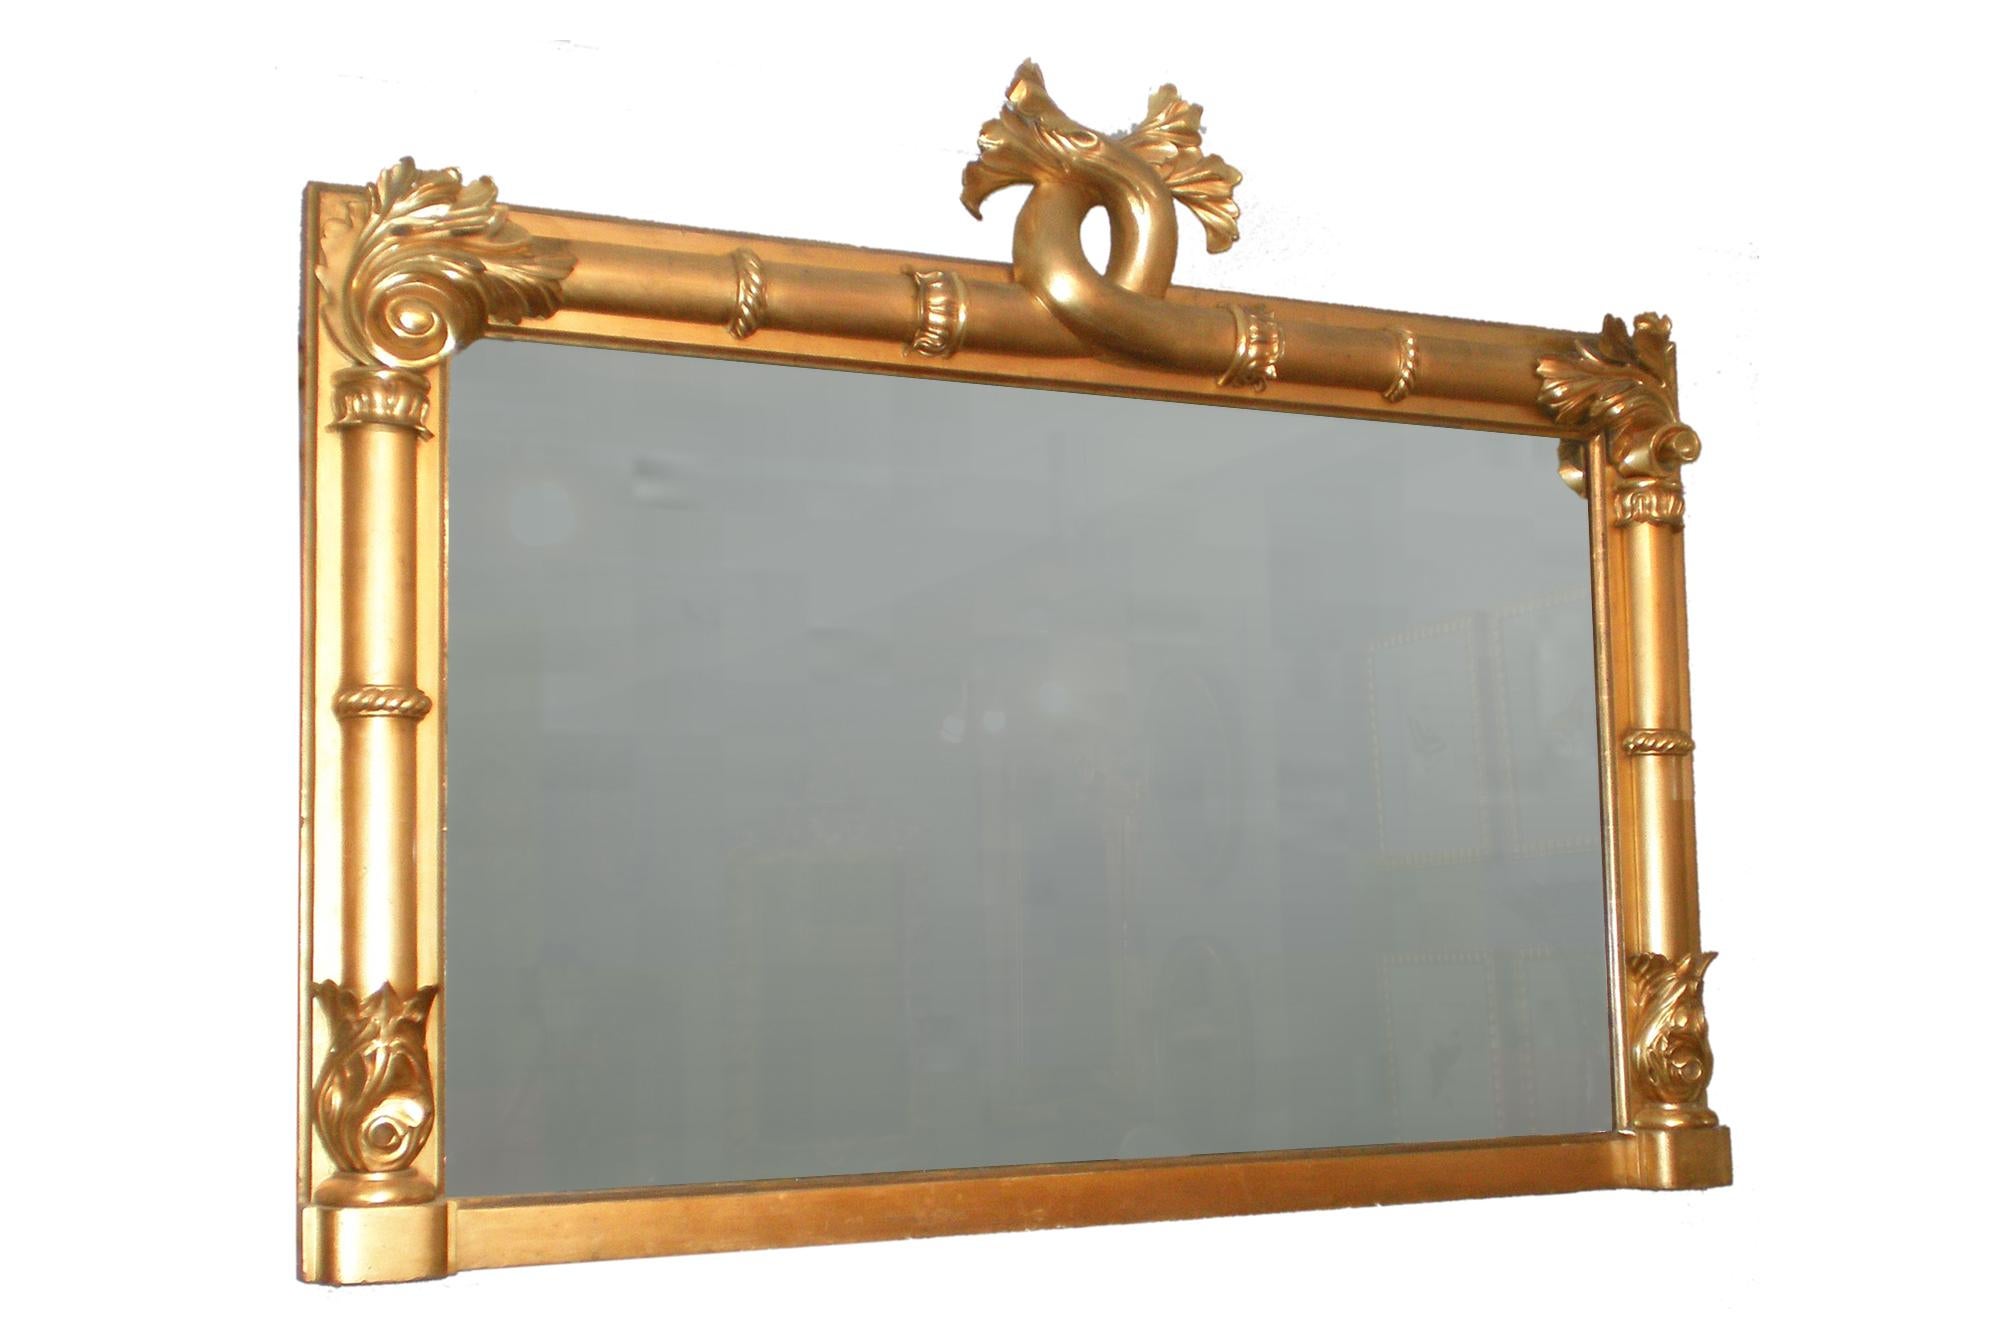 19. Jahrhundert William IV Englisch große rechteckige ornamentale Spiegel. Die Seiten und der obere Rand in Halbsäulen mit Lotus- und Akanthusschnitzereien, darüber ein verschlungener Akanthusblattkranz.